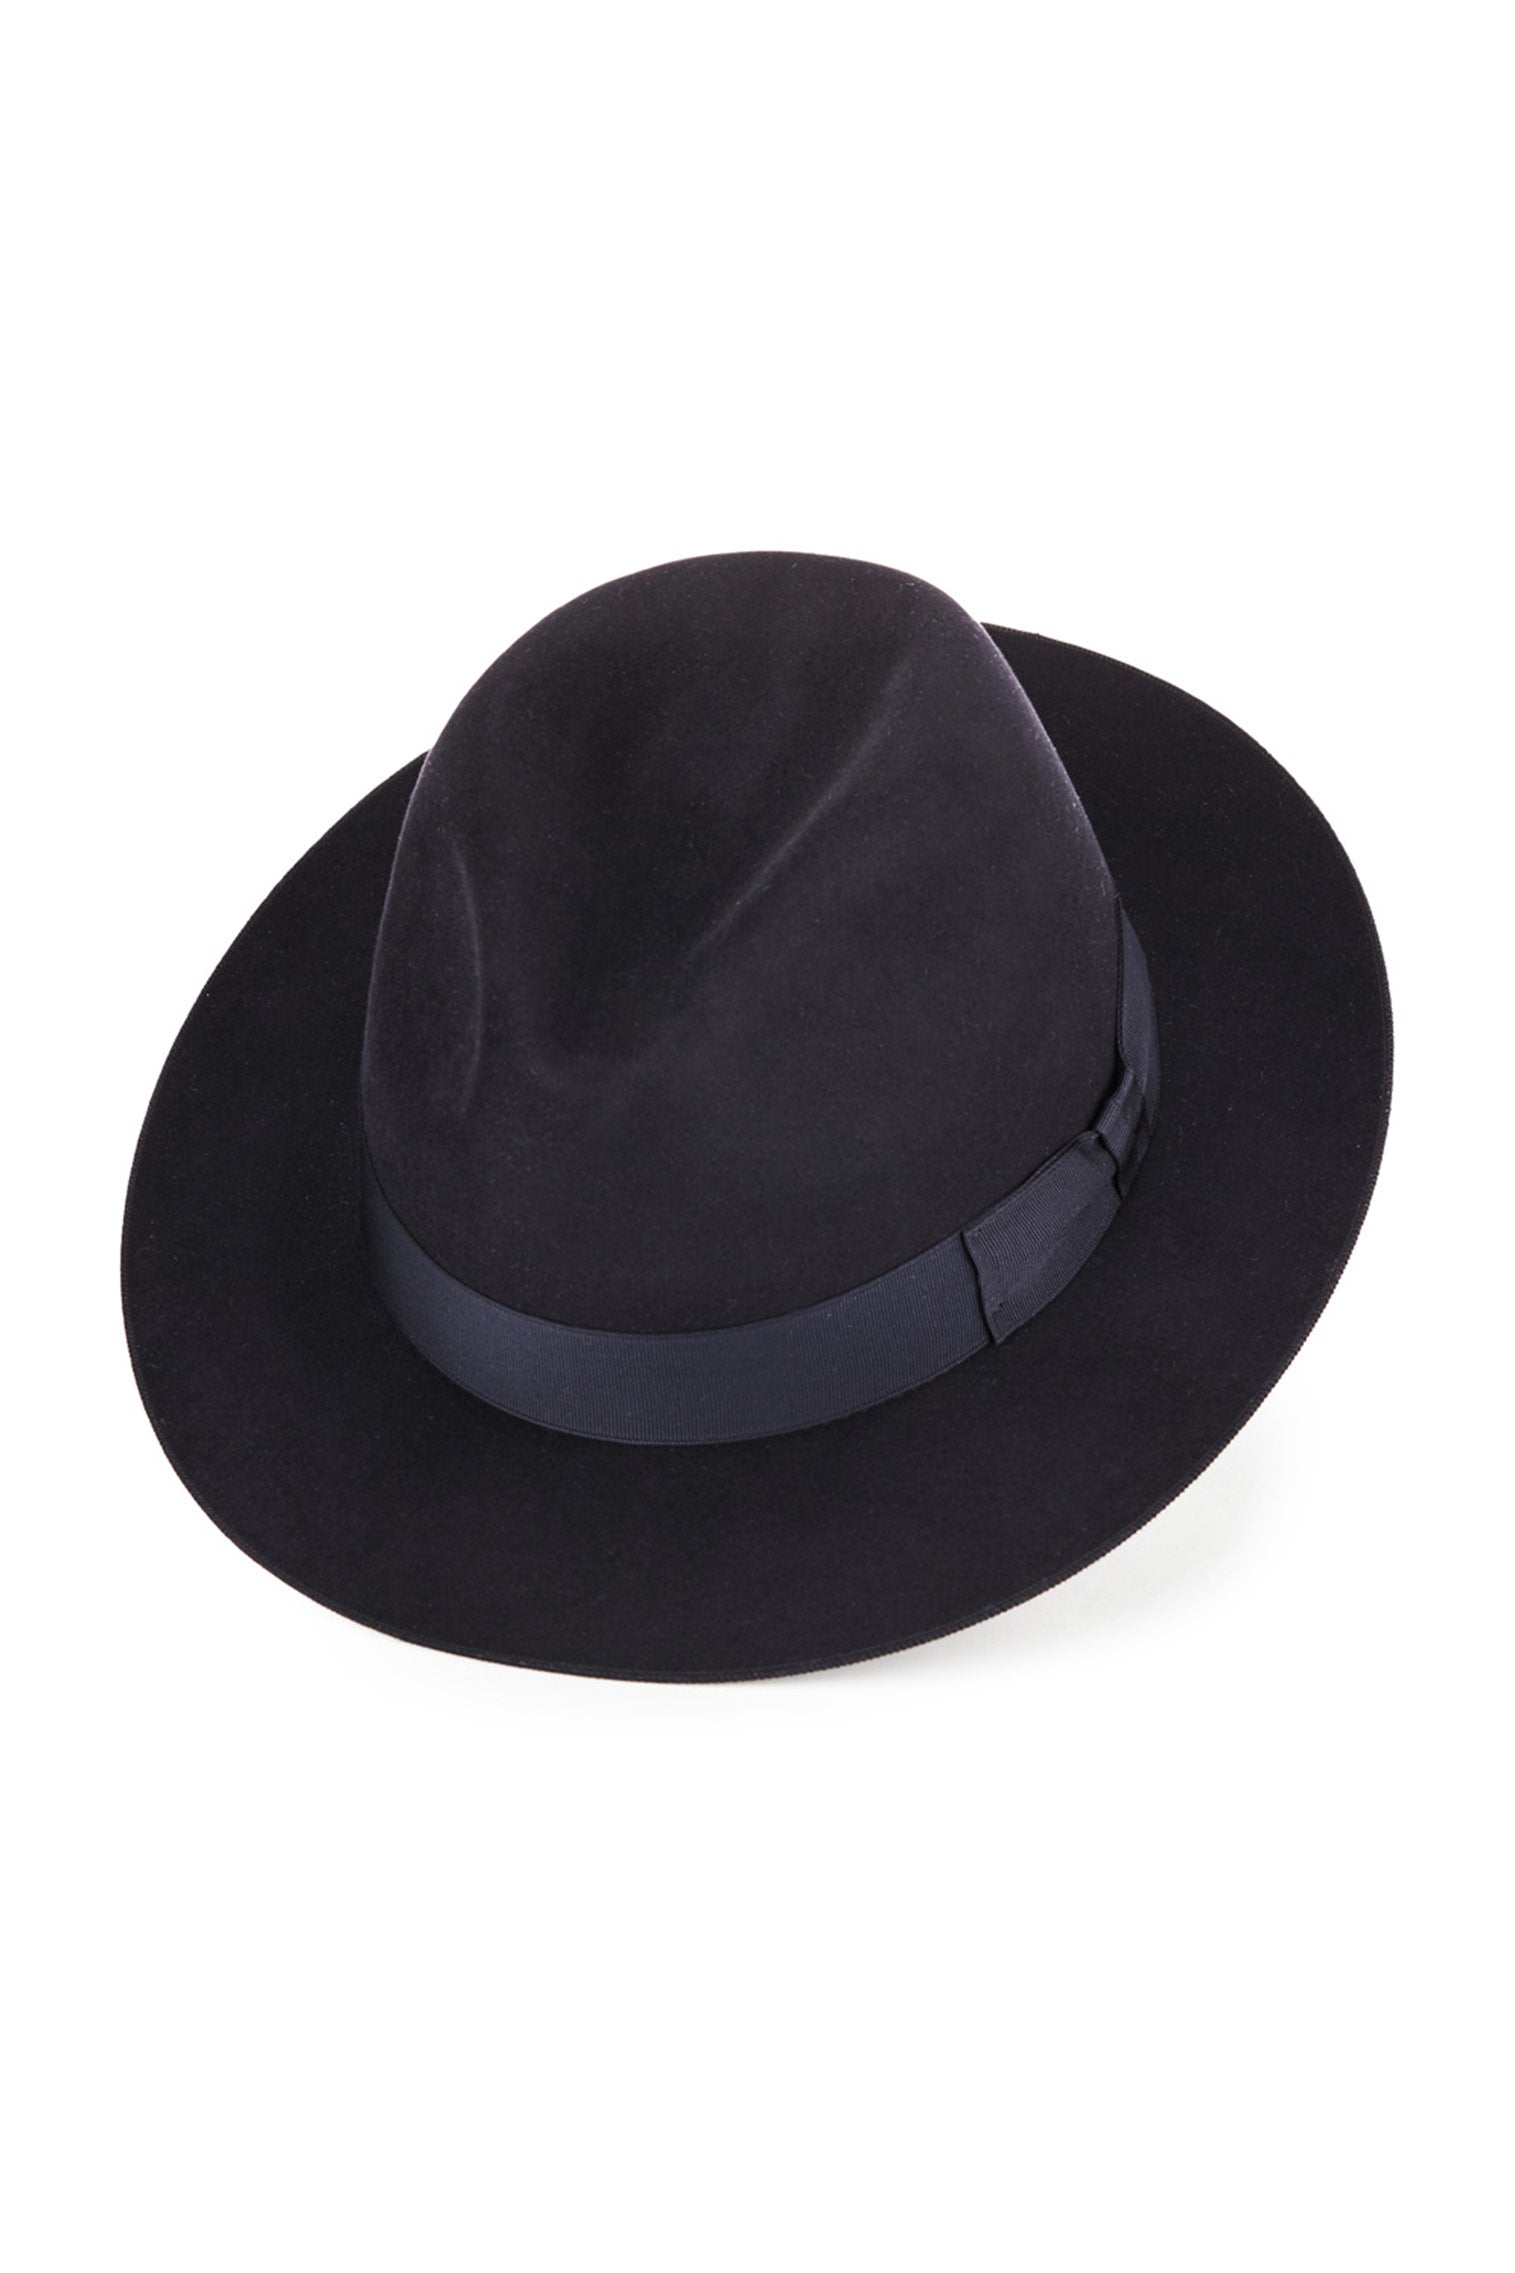 Fairbanks Trilby - Best Selling Hats - Lock & Co. Hatters London UK